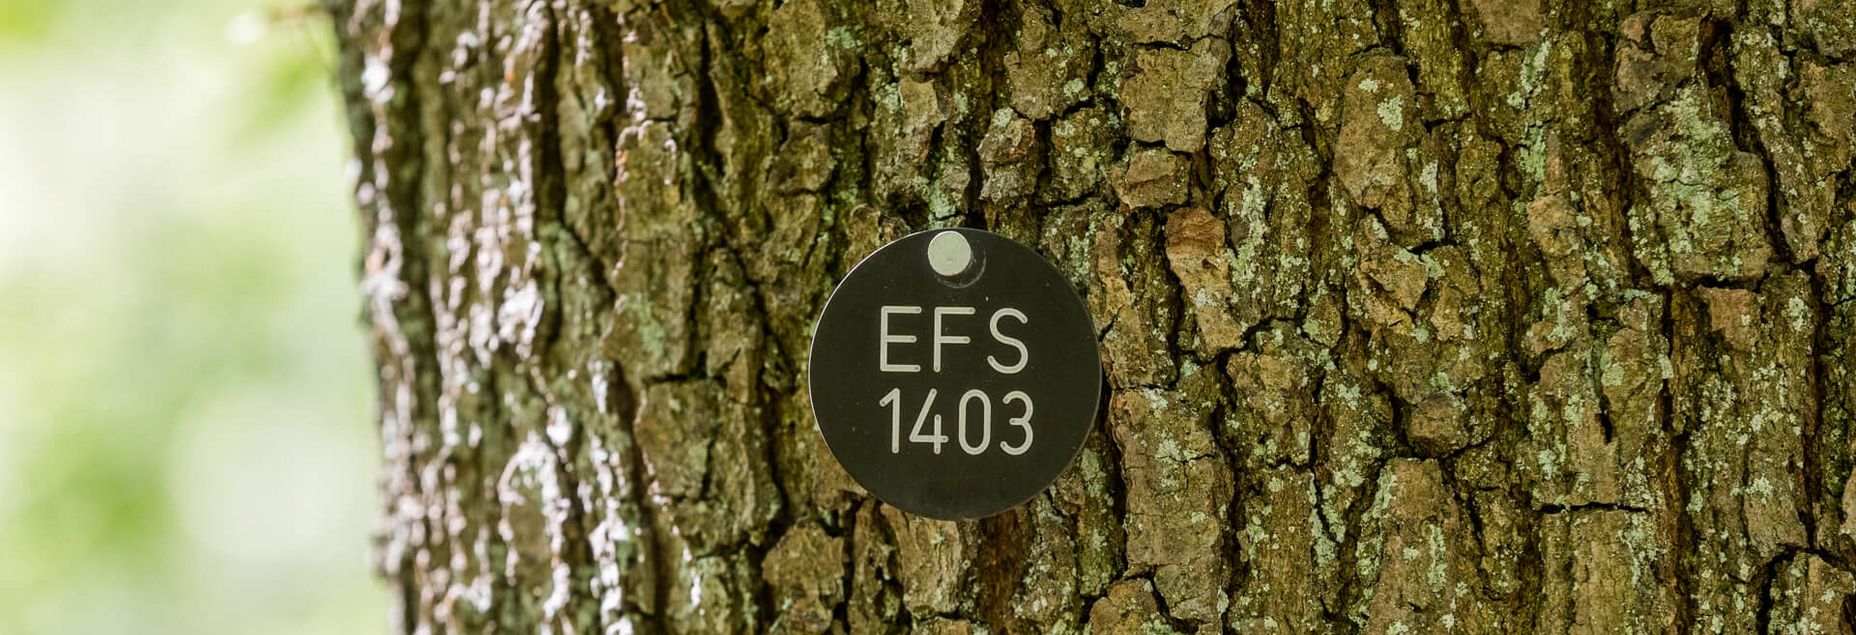 Baum EFS 1403 - Plakette